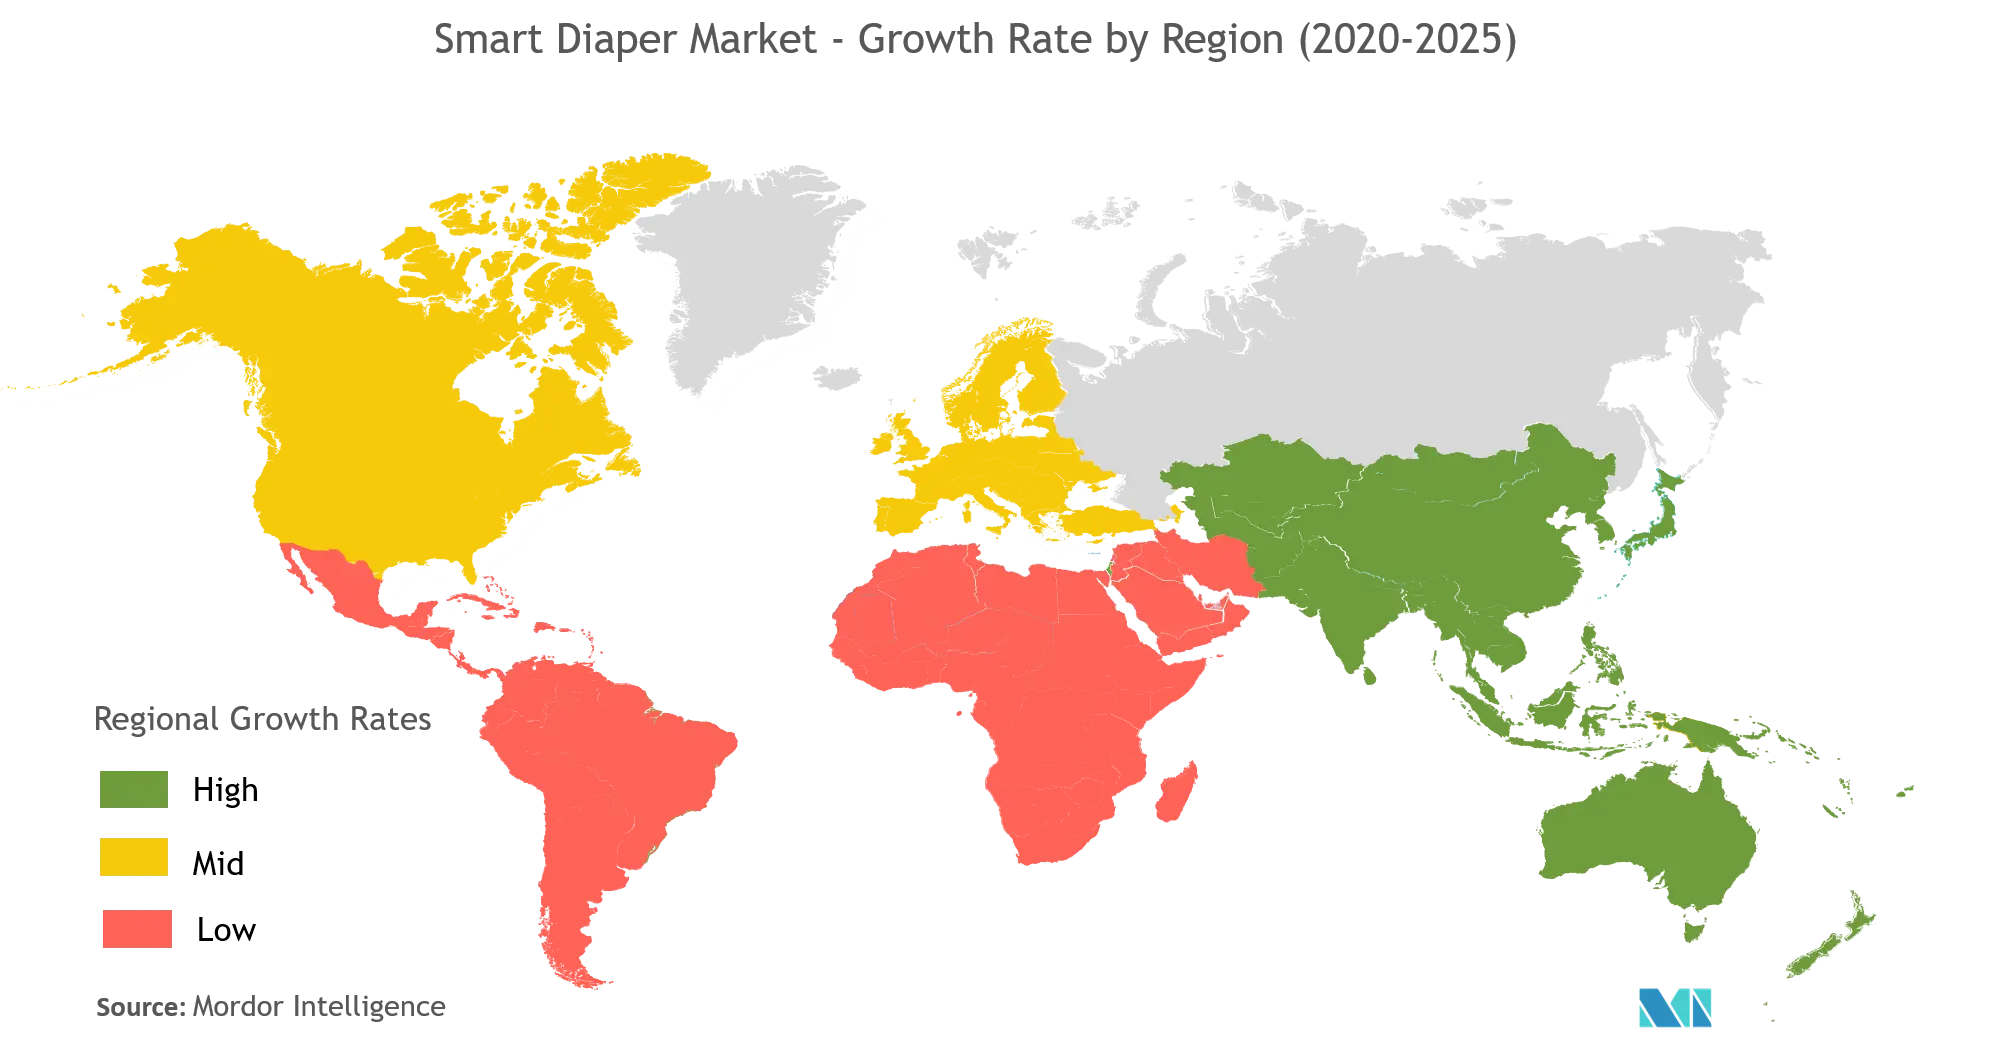 Thị trường tã thông minh - Tốc độ tăng trưởng theo khu vực